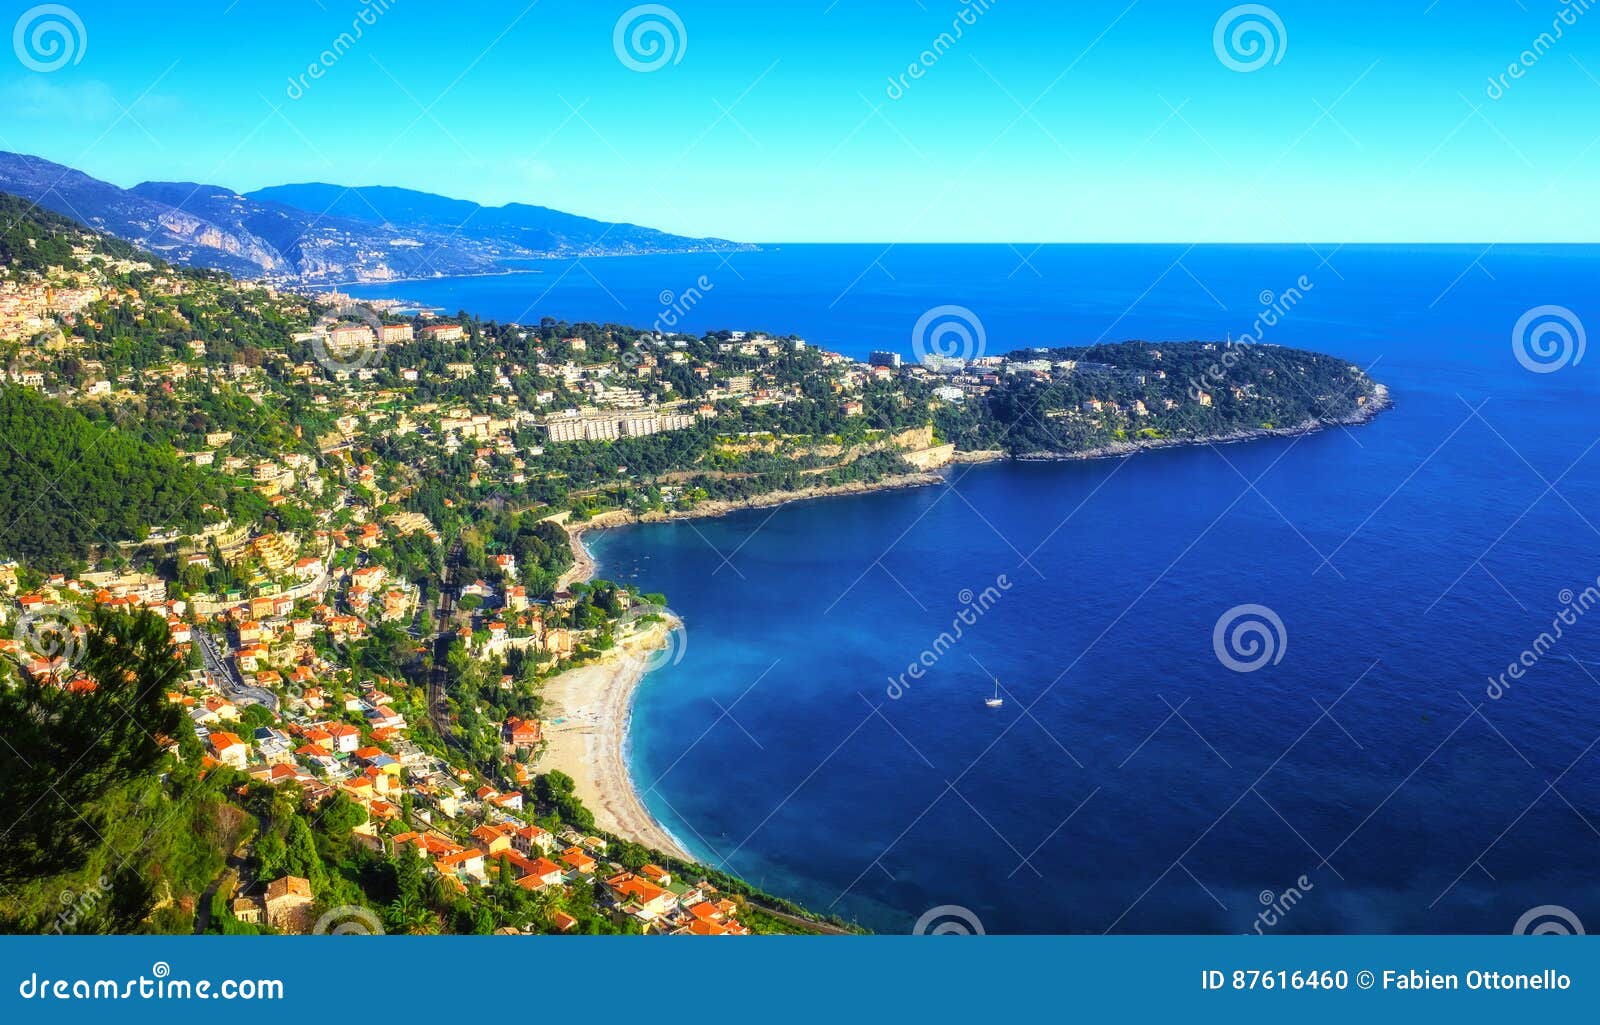 roquebrune cap martin and its lovely golfe bleu beach